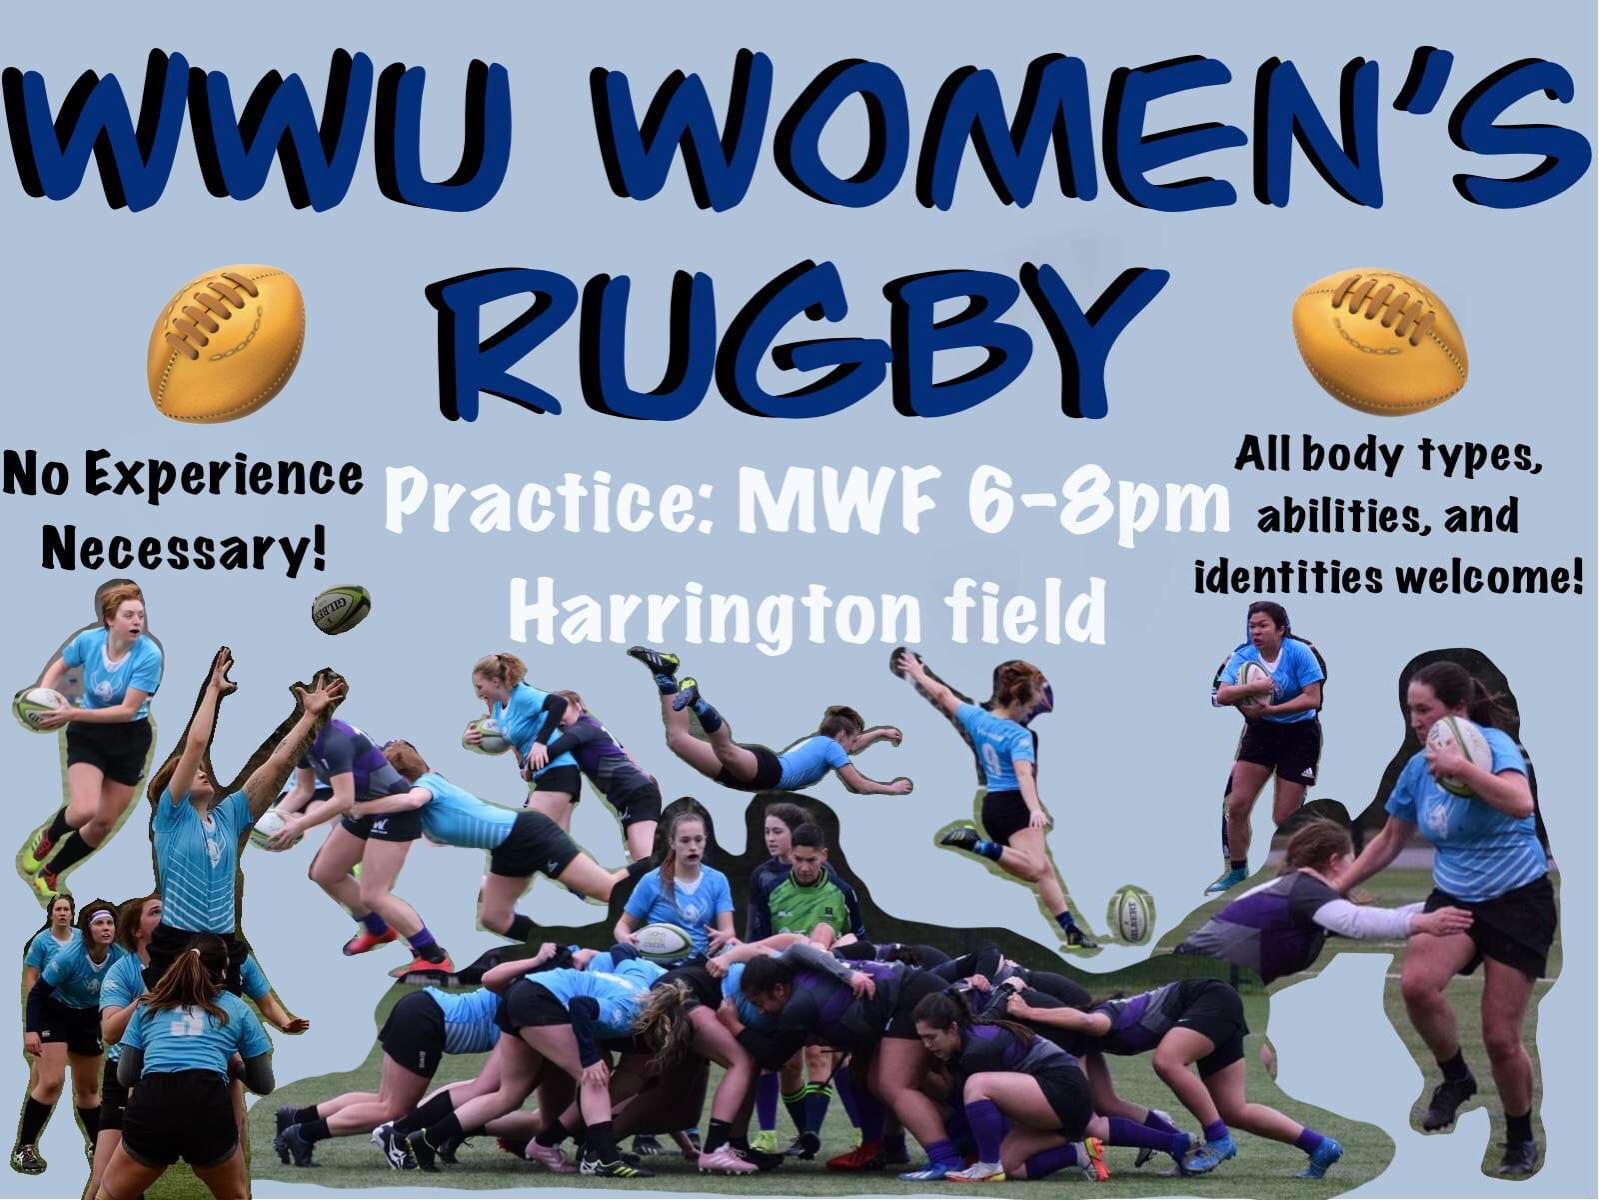 WWU Women's Rugby Practice MWF 6-8pm Harrington Field